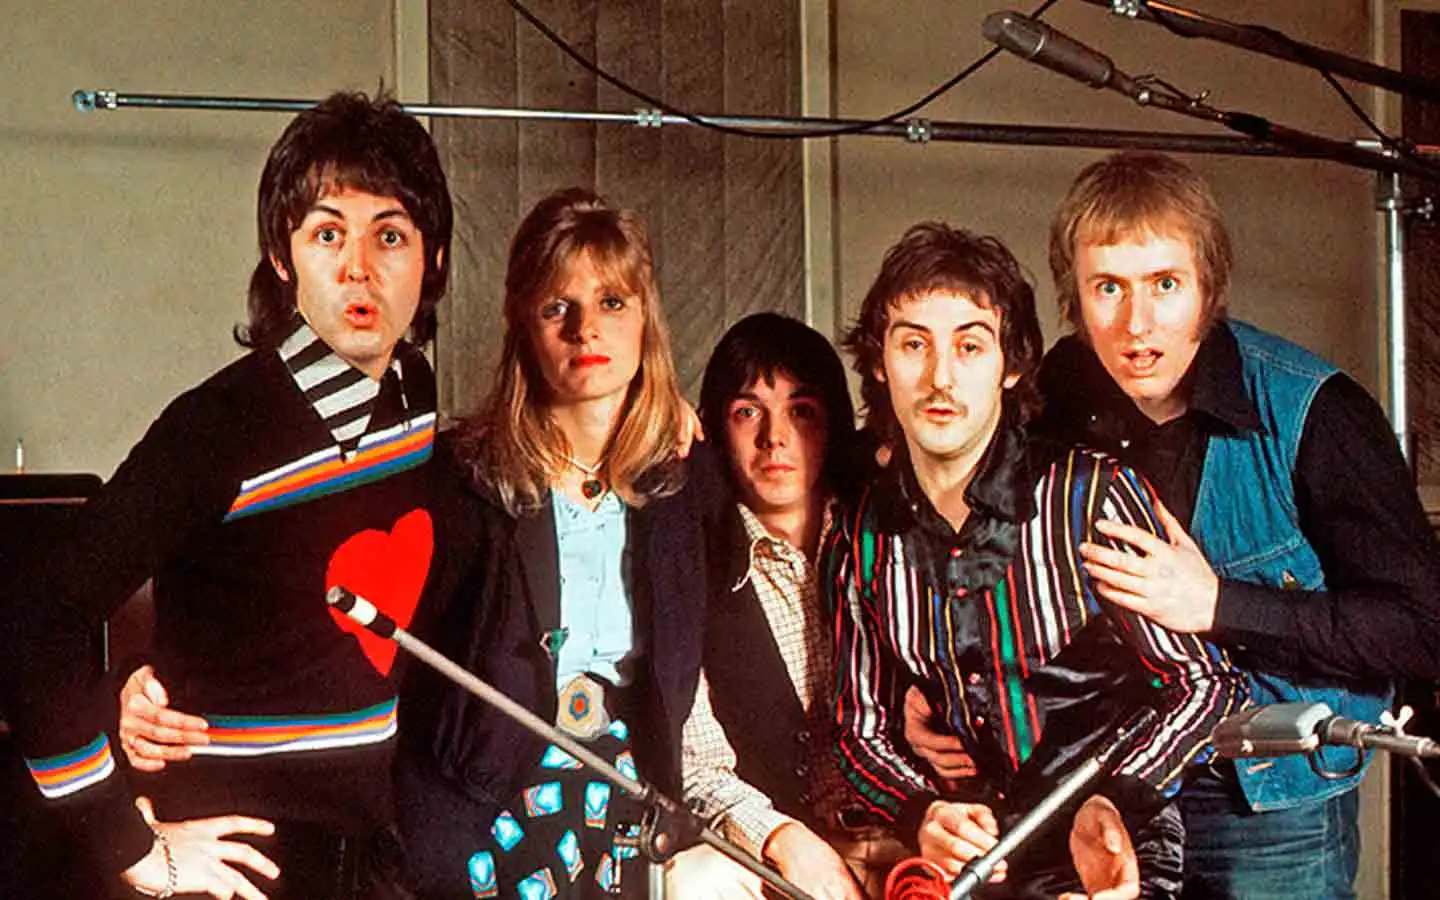 Hace 48 años Paul McCartney y Wings llegaron al número 1 con “Band On The Run”